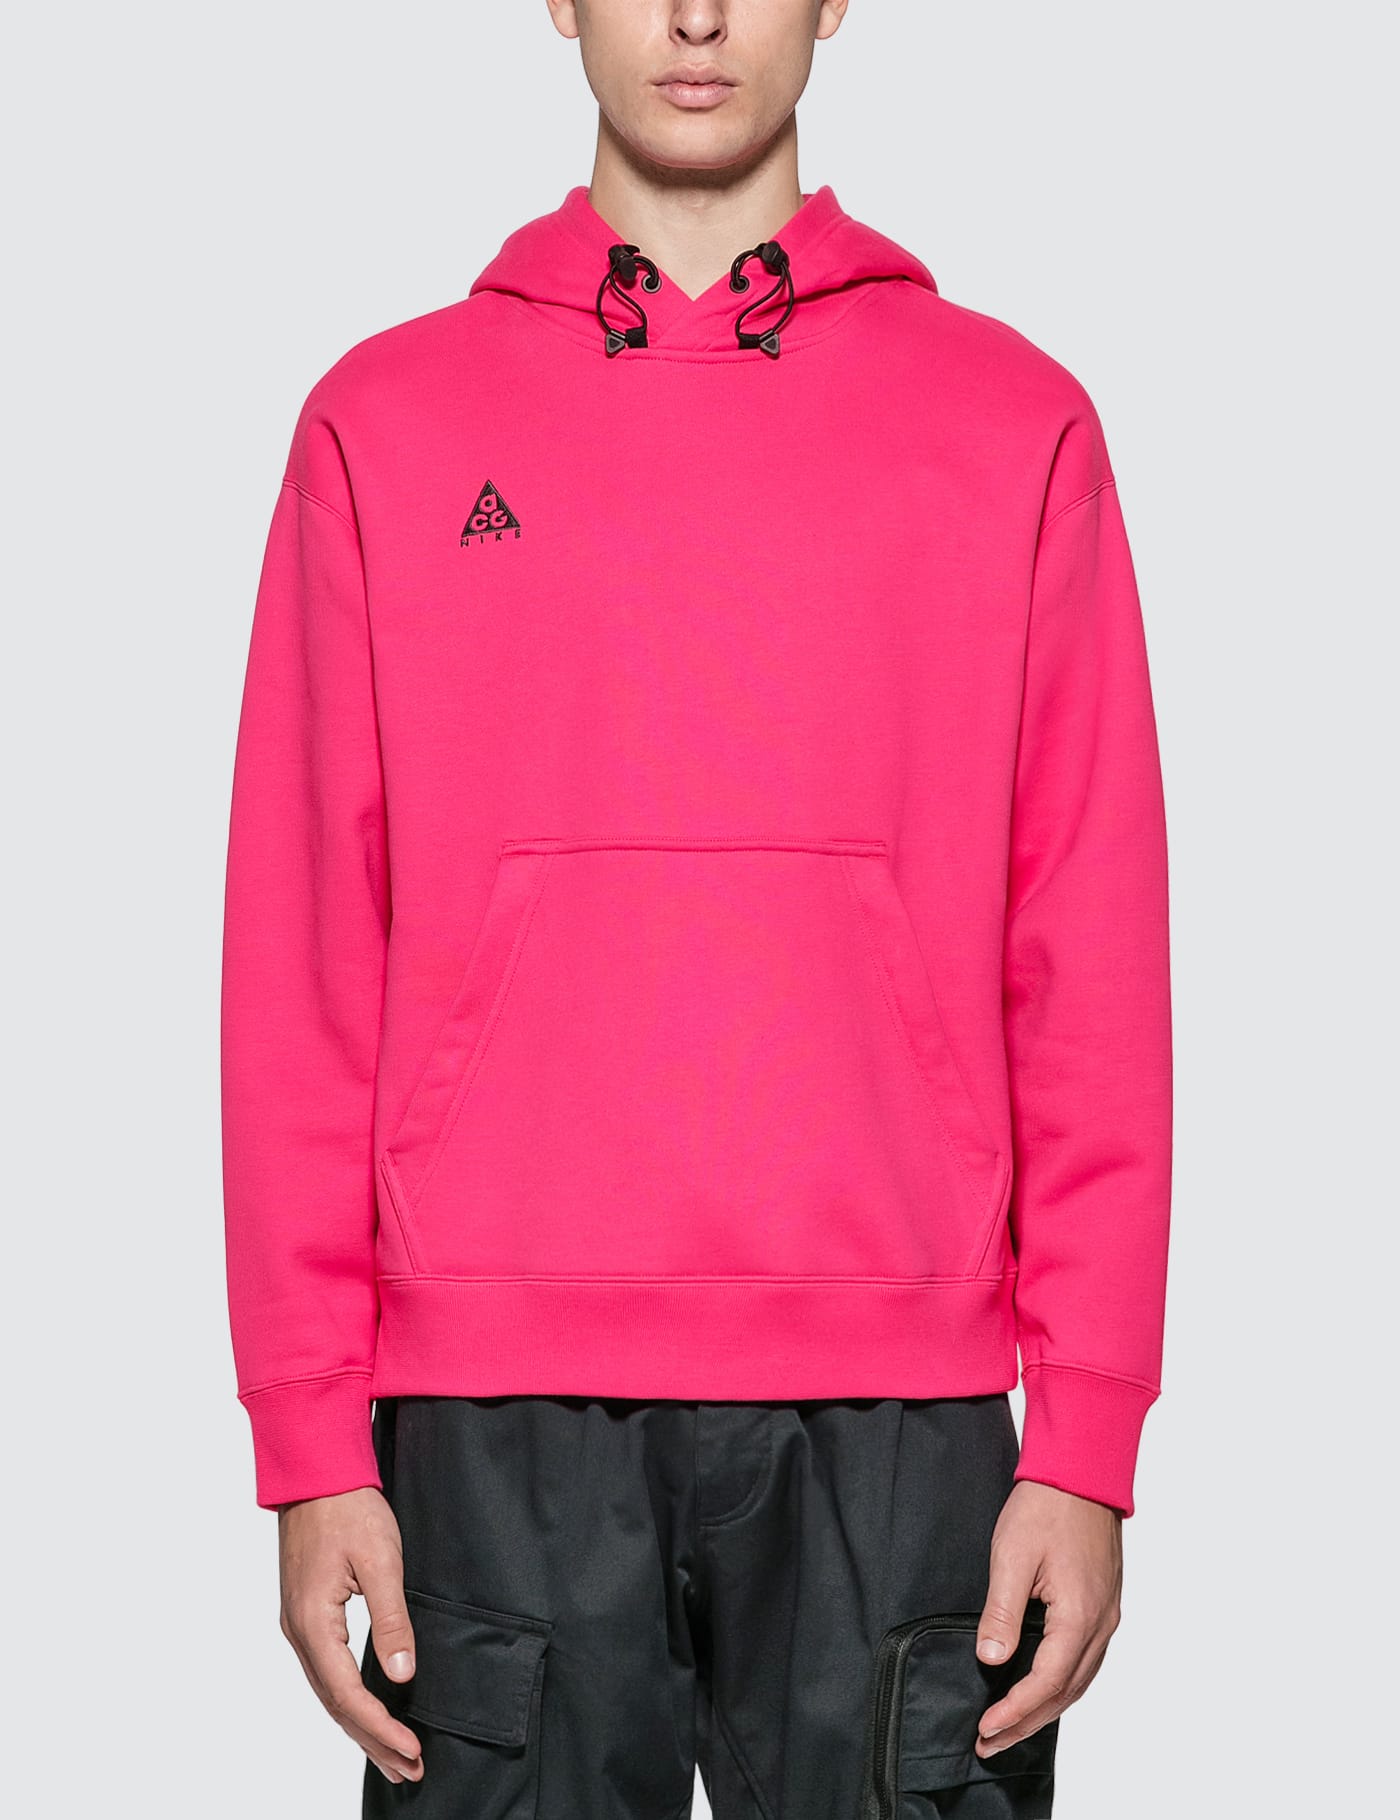 acg pink hoodie